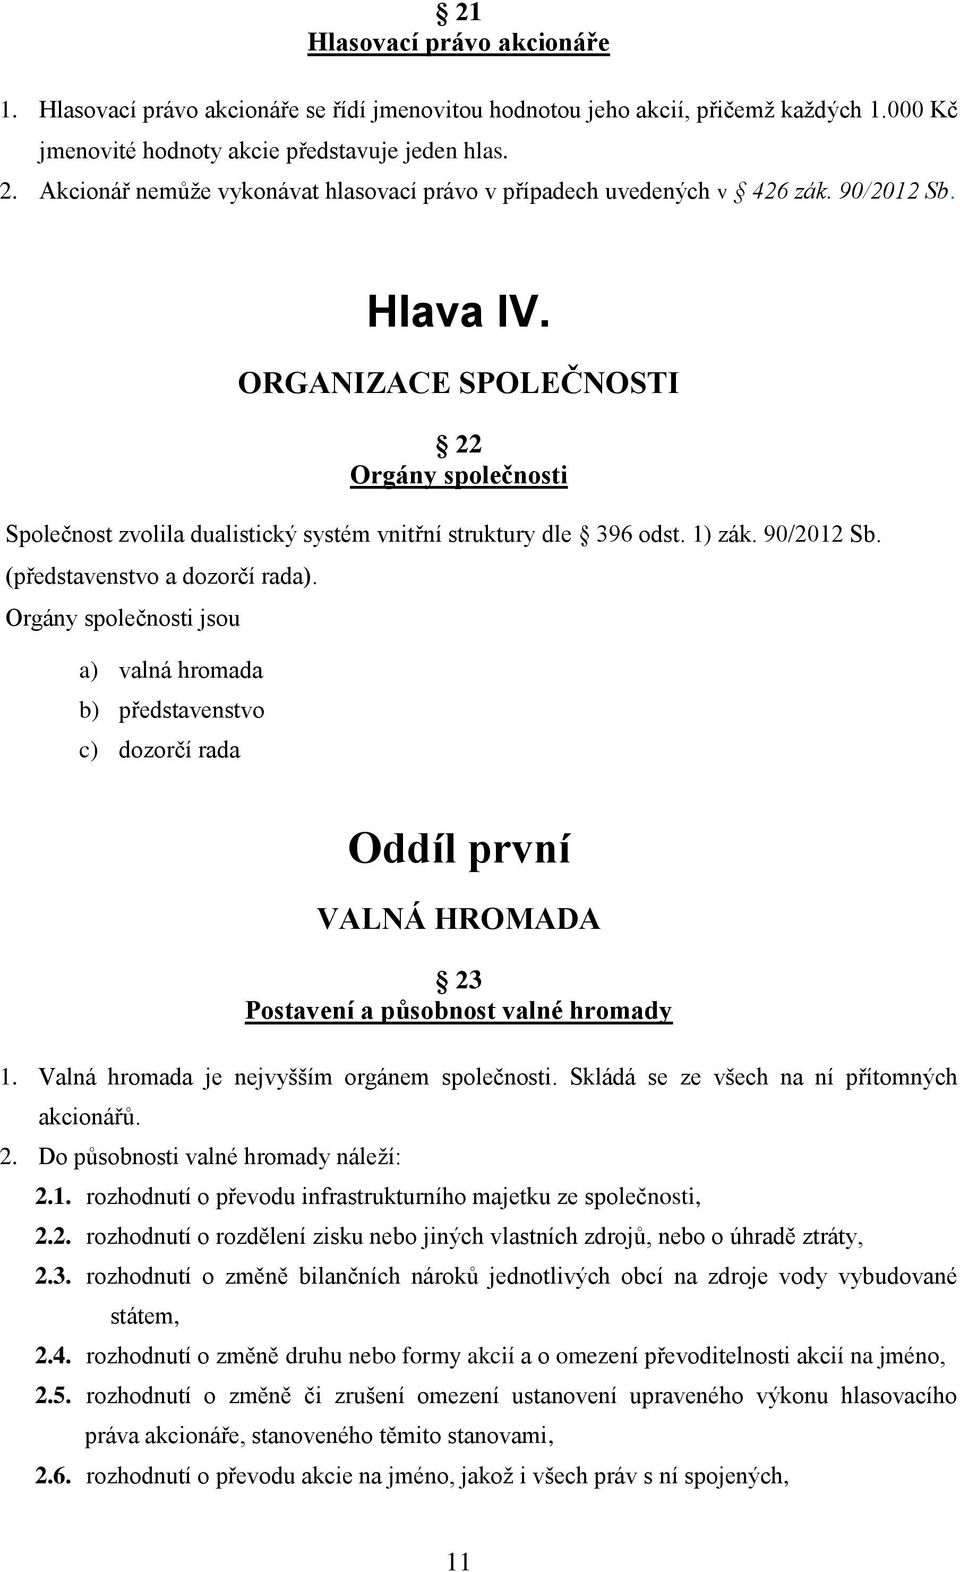 ORGANIZACE SPOLEČNOSTI 22 Orgány společnosti Společnost zvolila dualistický systém vnitřní struktury dle 396 odst. 1) zák. 90/2012 Sb. (představenstvo a dozorčí rada).